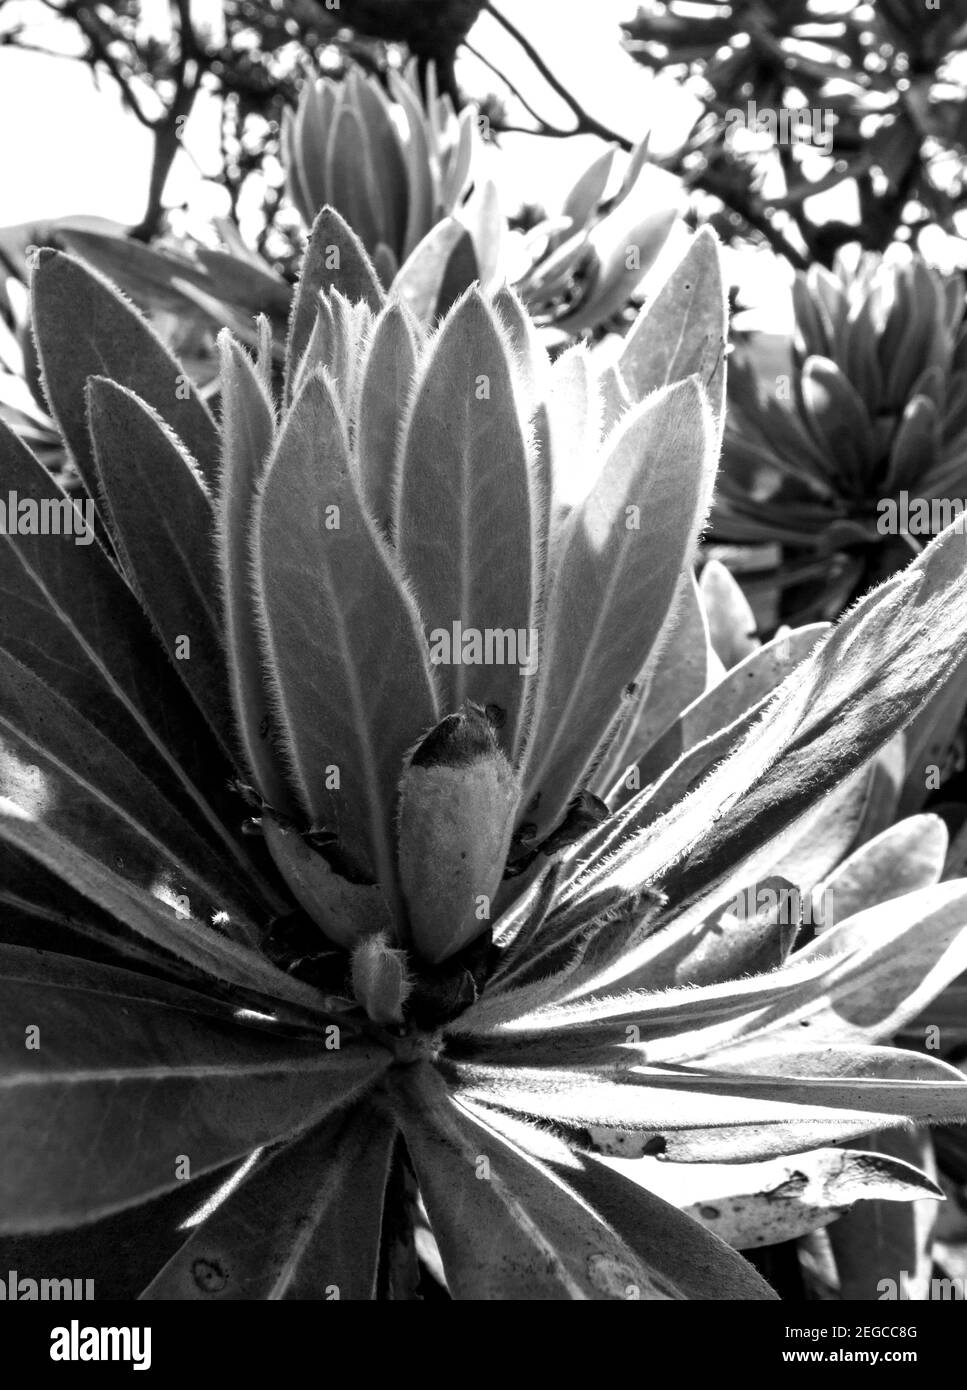 Vista ravvicinata delle nuove foglie sul punto di un ramo di un comune Protea Bush, Protea caffra, in monocromo, fotografato nel Drakensber centrale Foto Stock